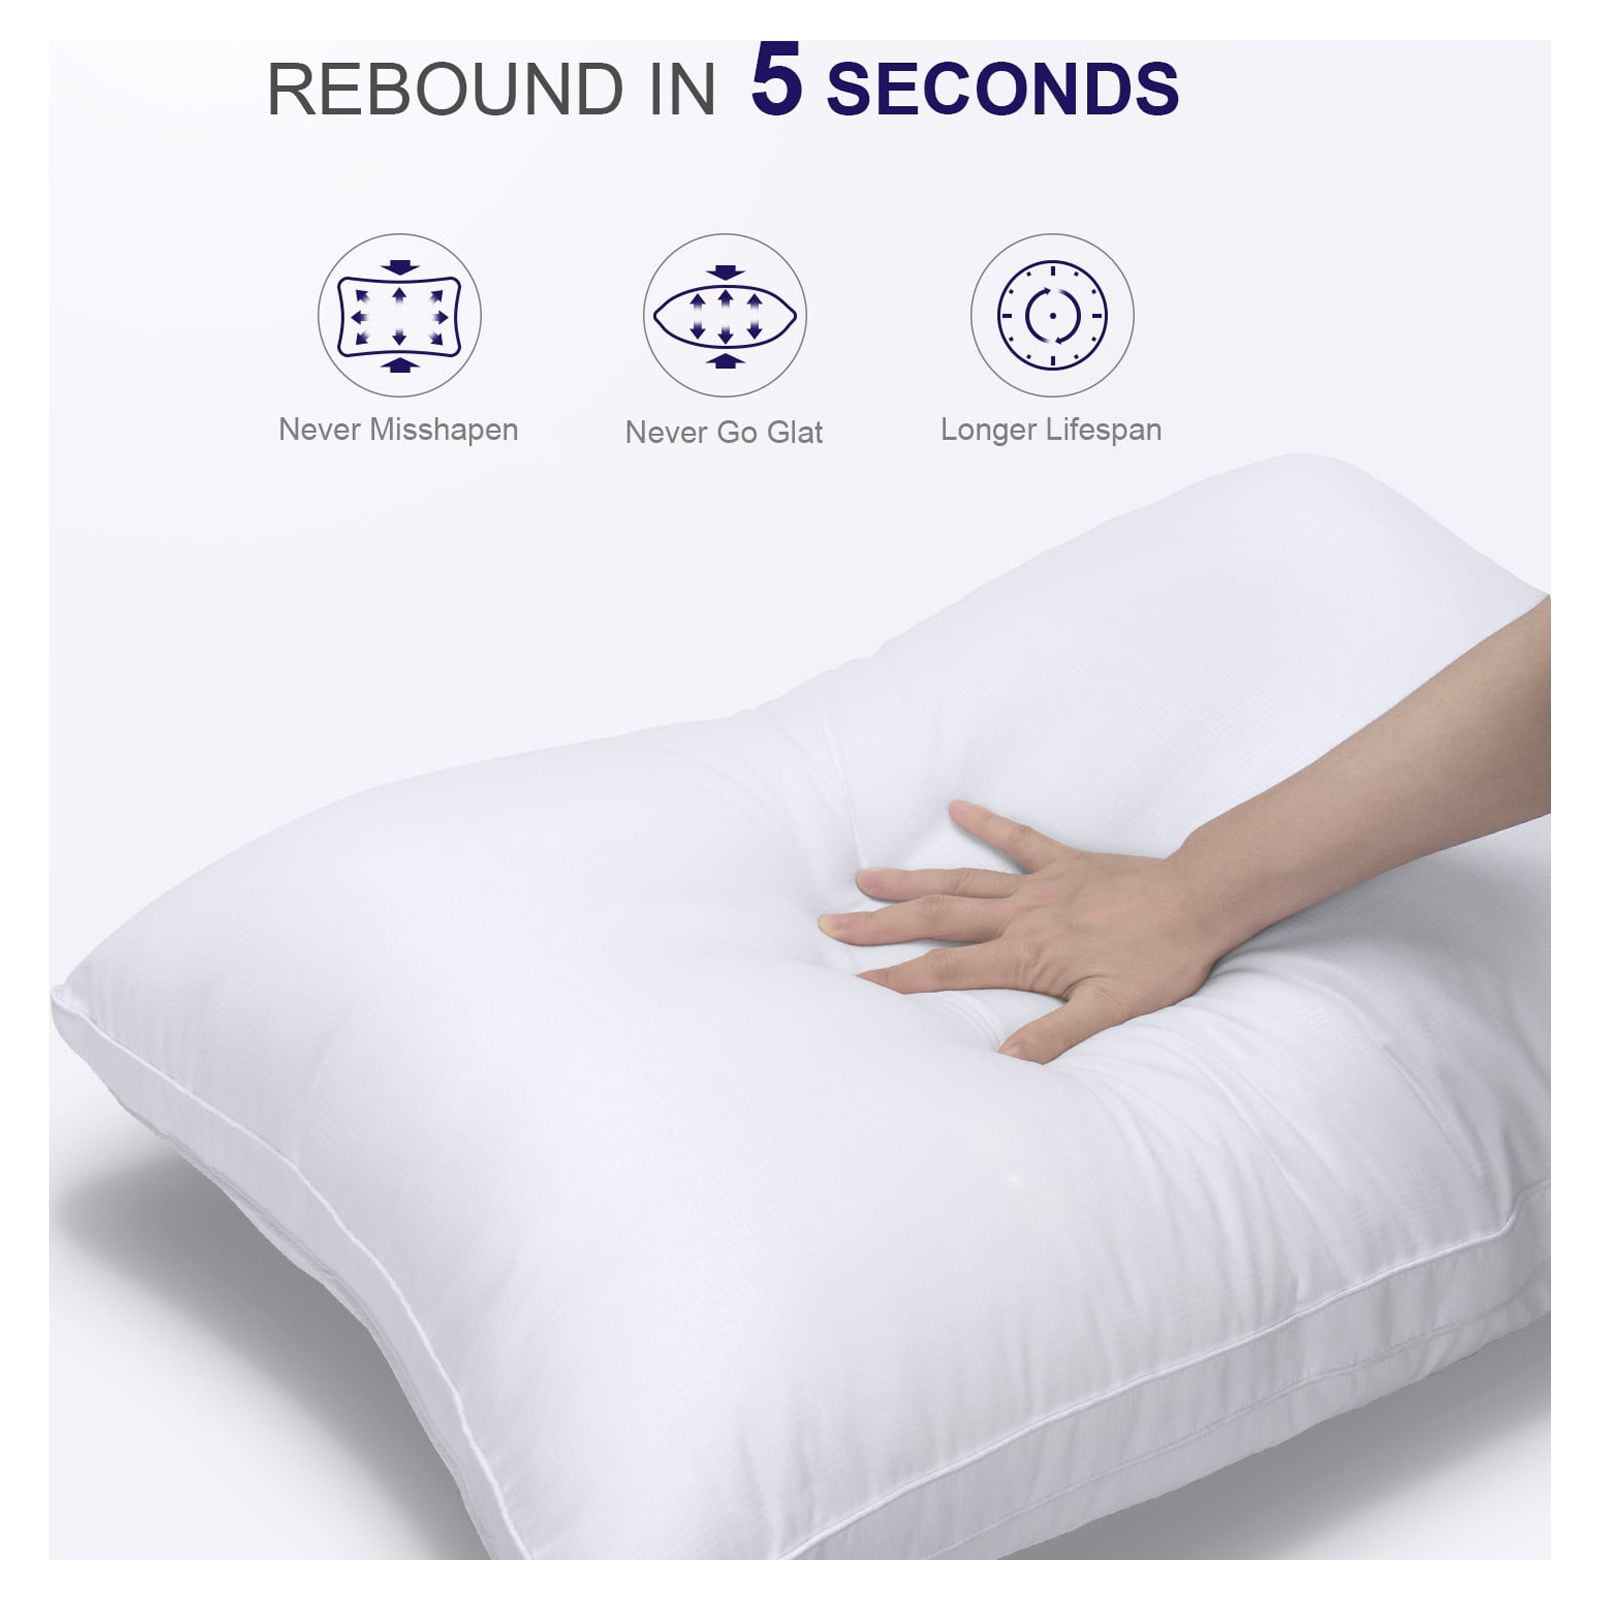 Down Alternative Pillow - Queen Size Pillow Pack of 2 – DZEE Home